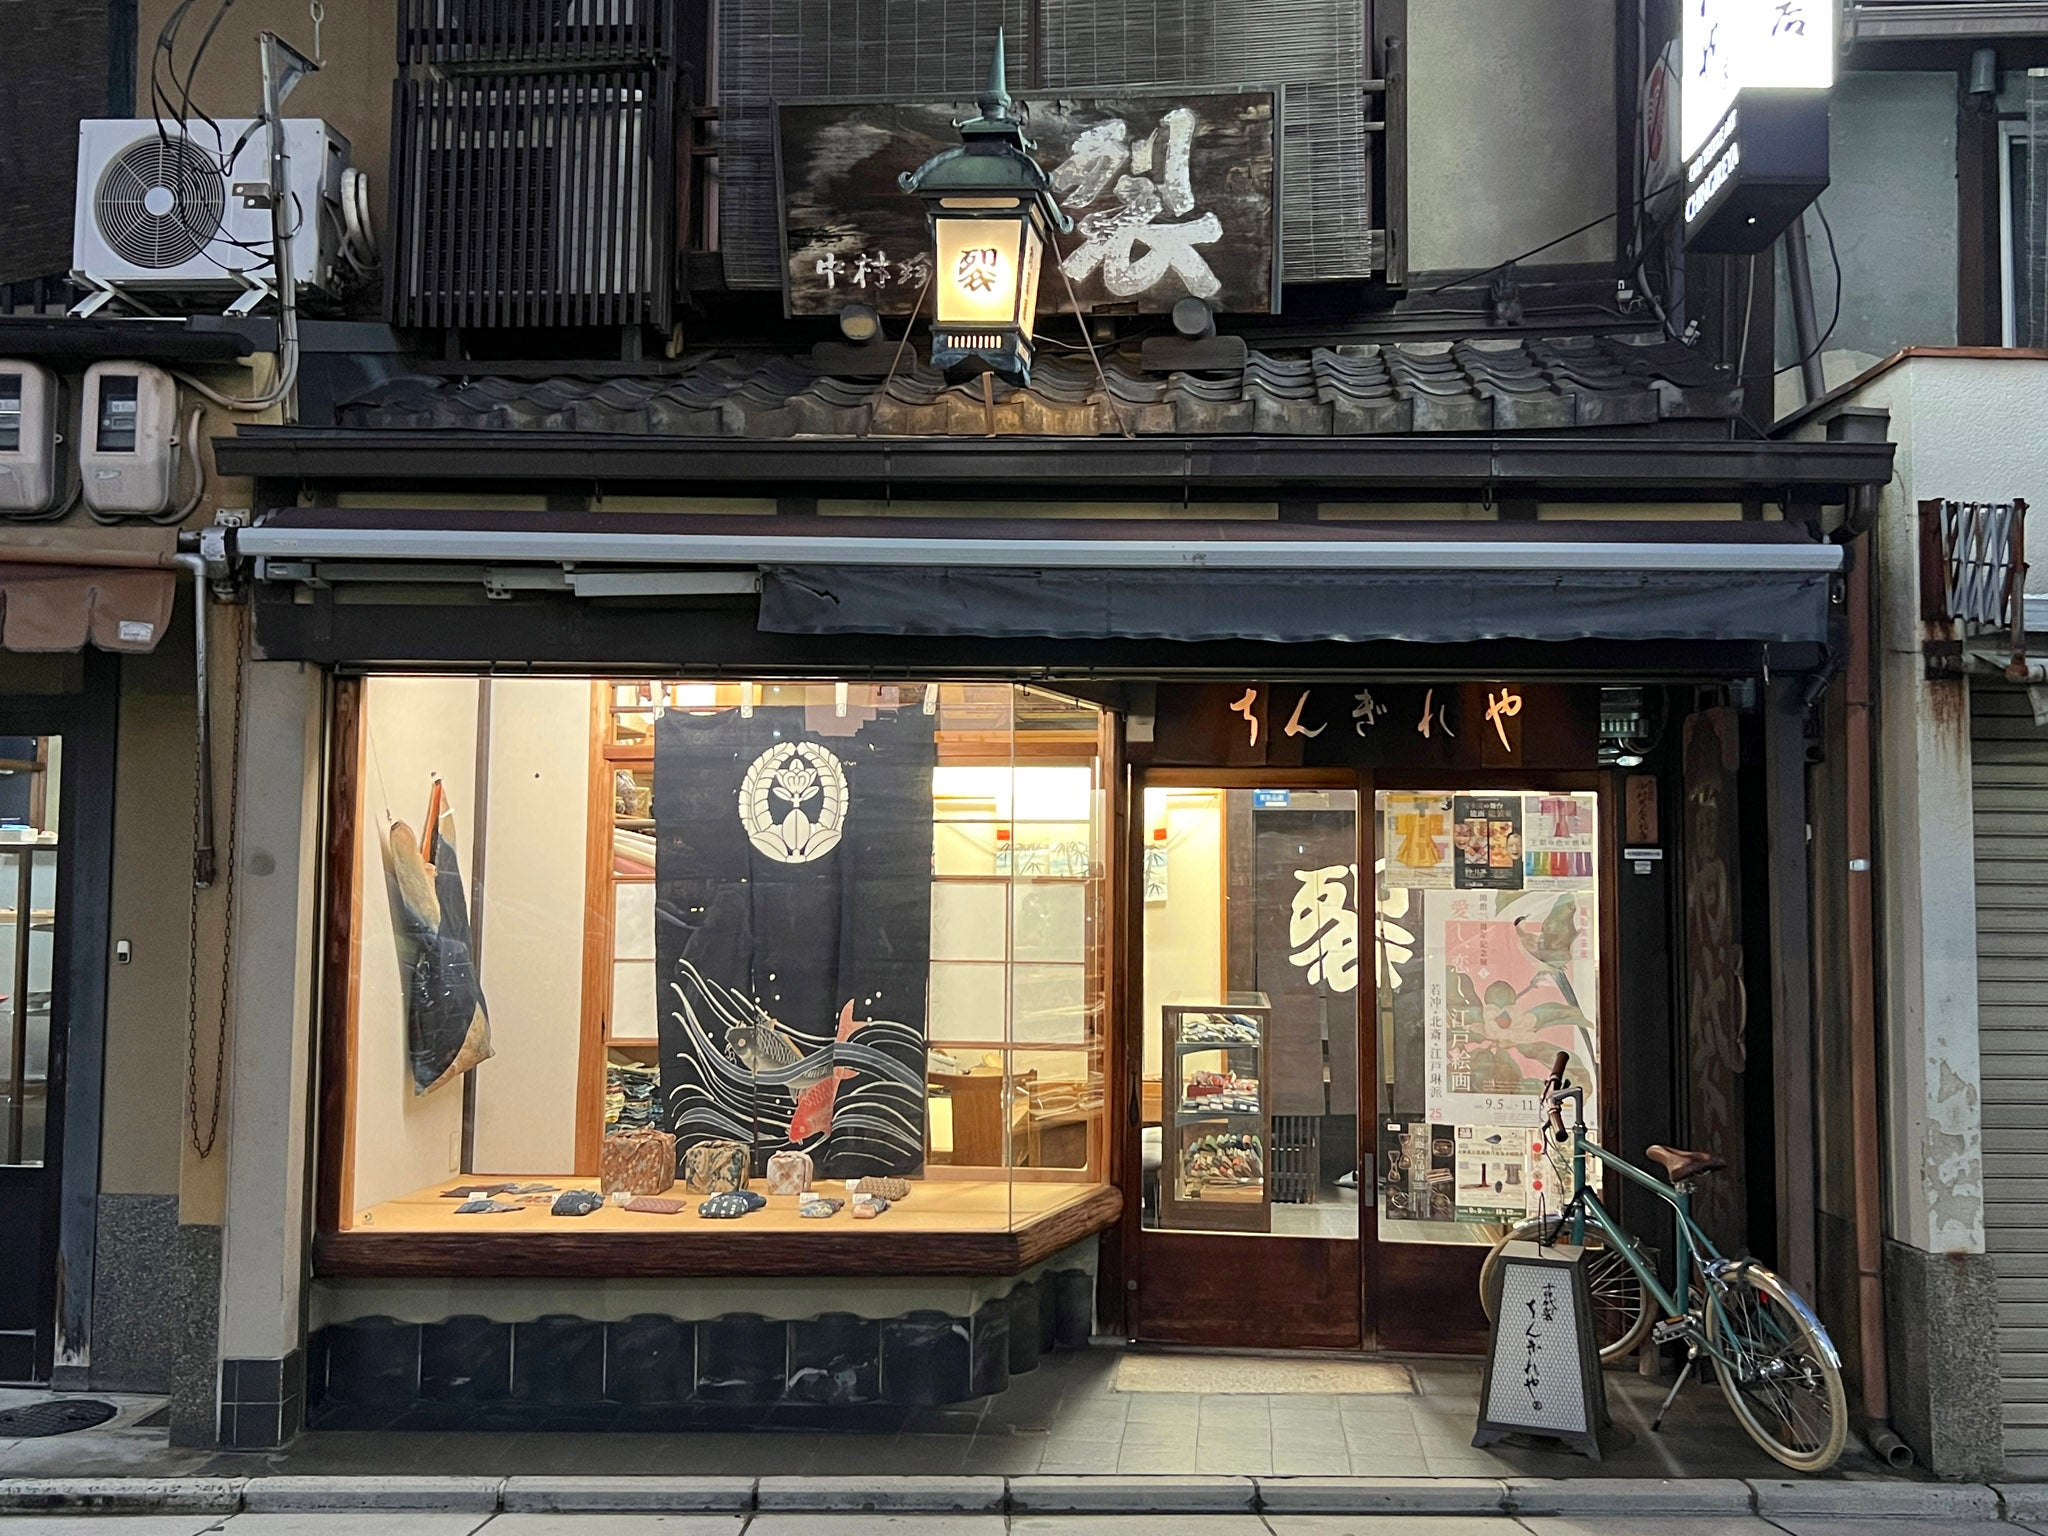 Nakamura Chingireten, Old Textile Art, in Kyoto